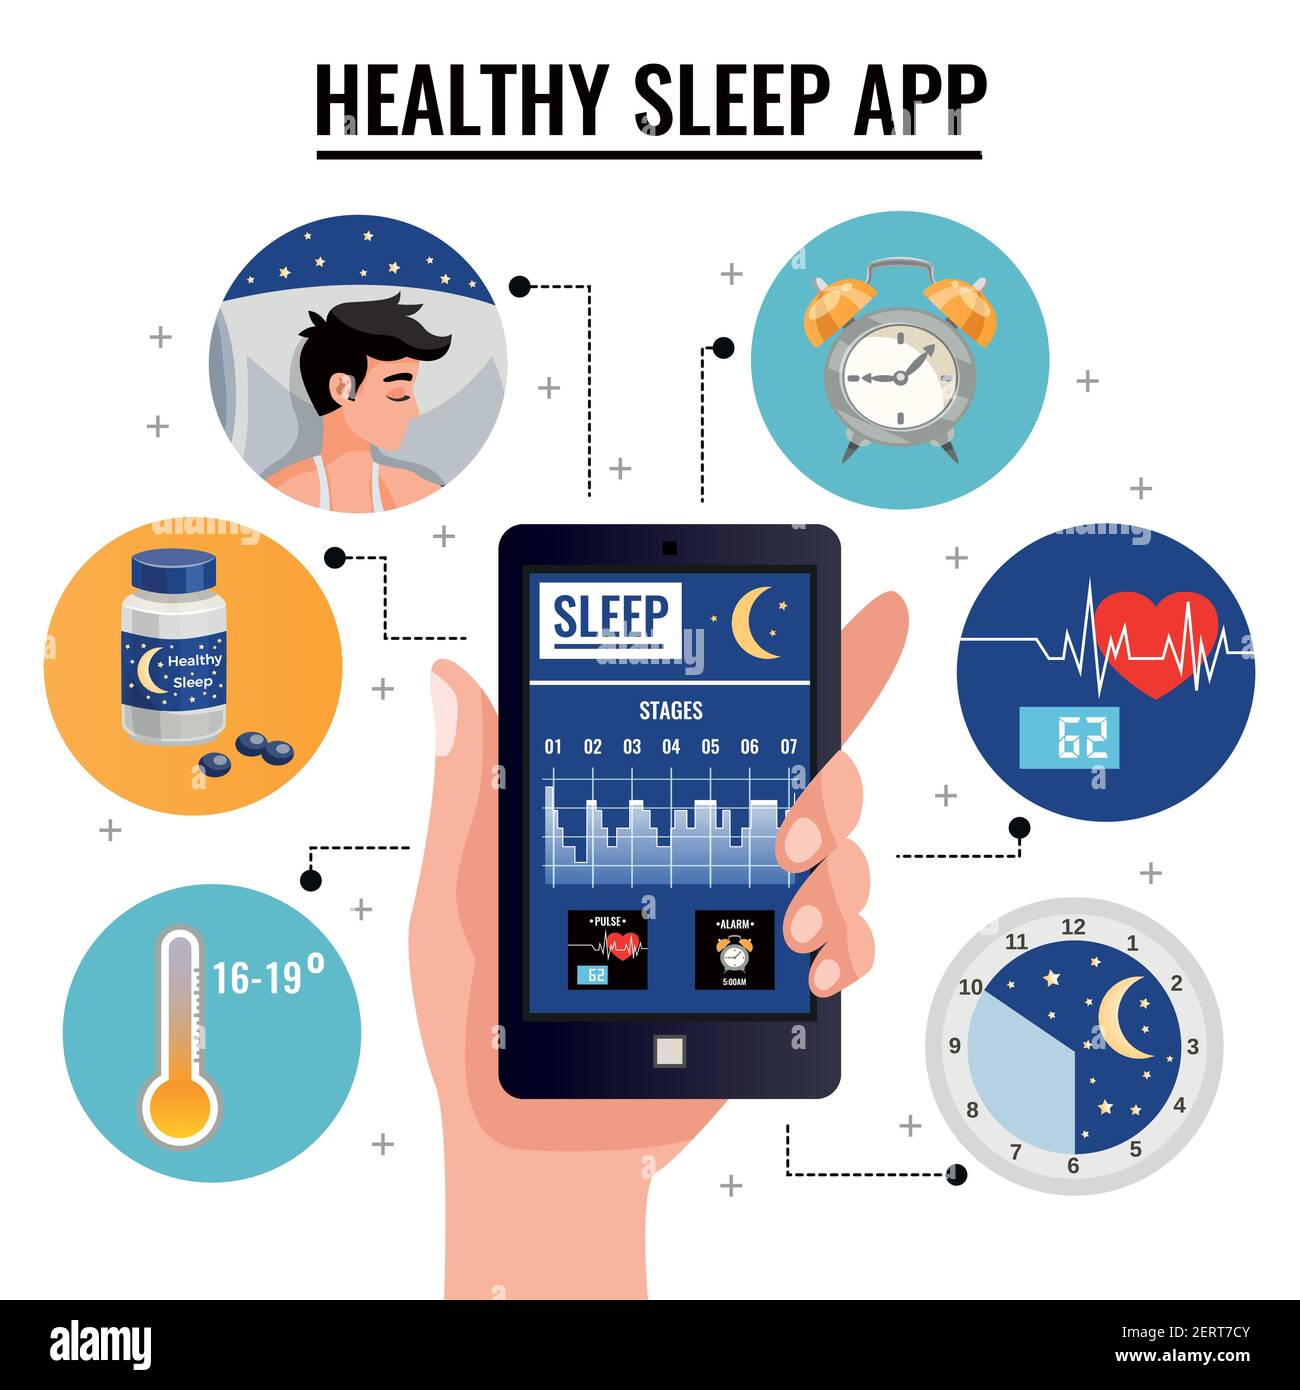 Gesundes Schlaf App Design-Konzept mit Diagramm der Schlafstadien Auf dem Bildschirm des Smartphones in menschlichen Hand Vektor-Illustration Stock Vektor